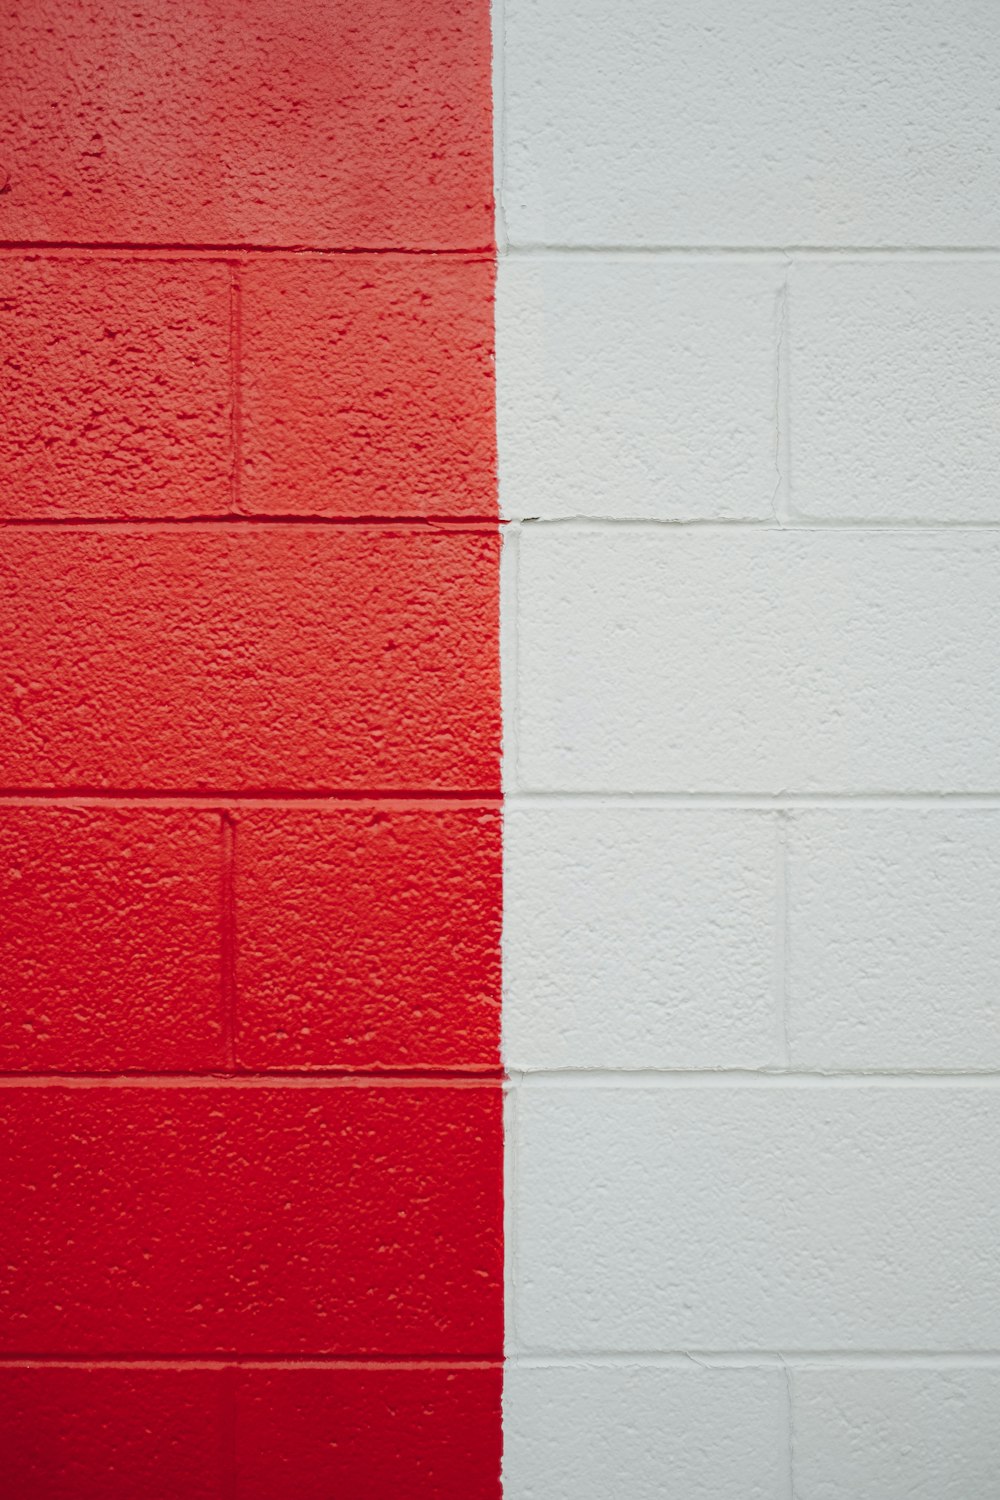 una pared roja y blanca con una franja roja y blanca